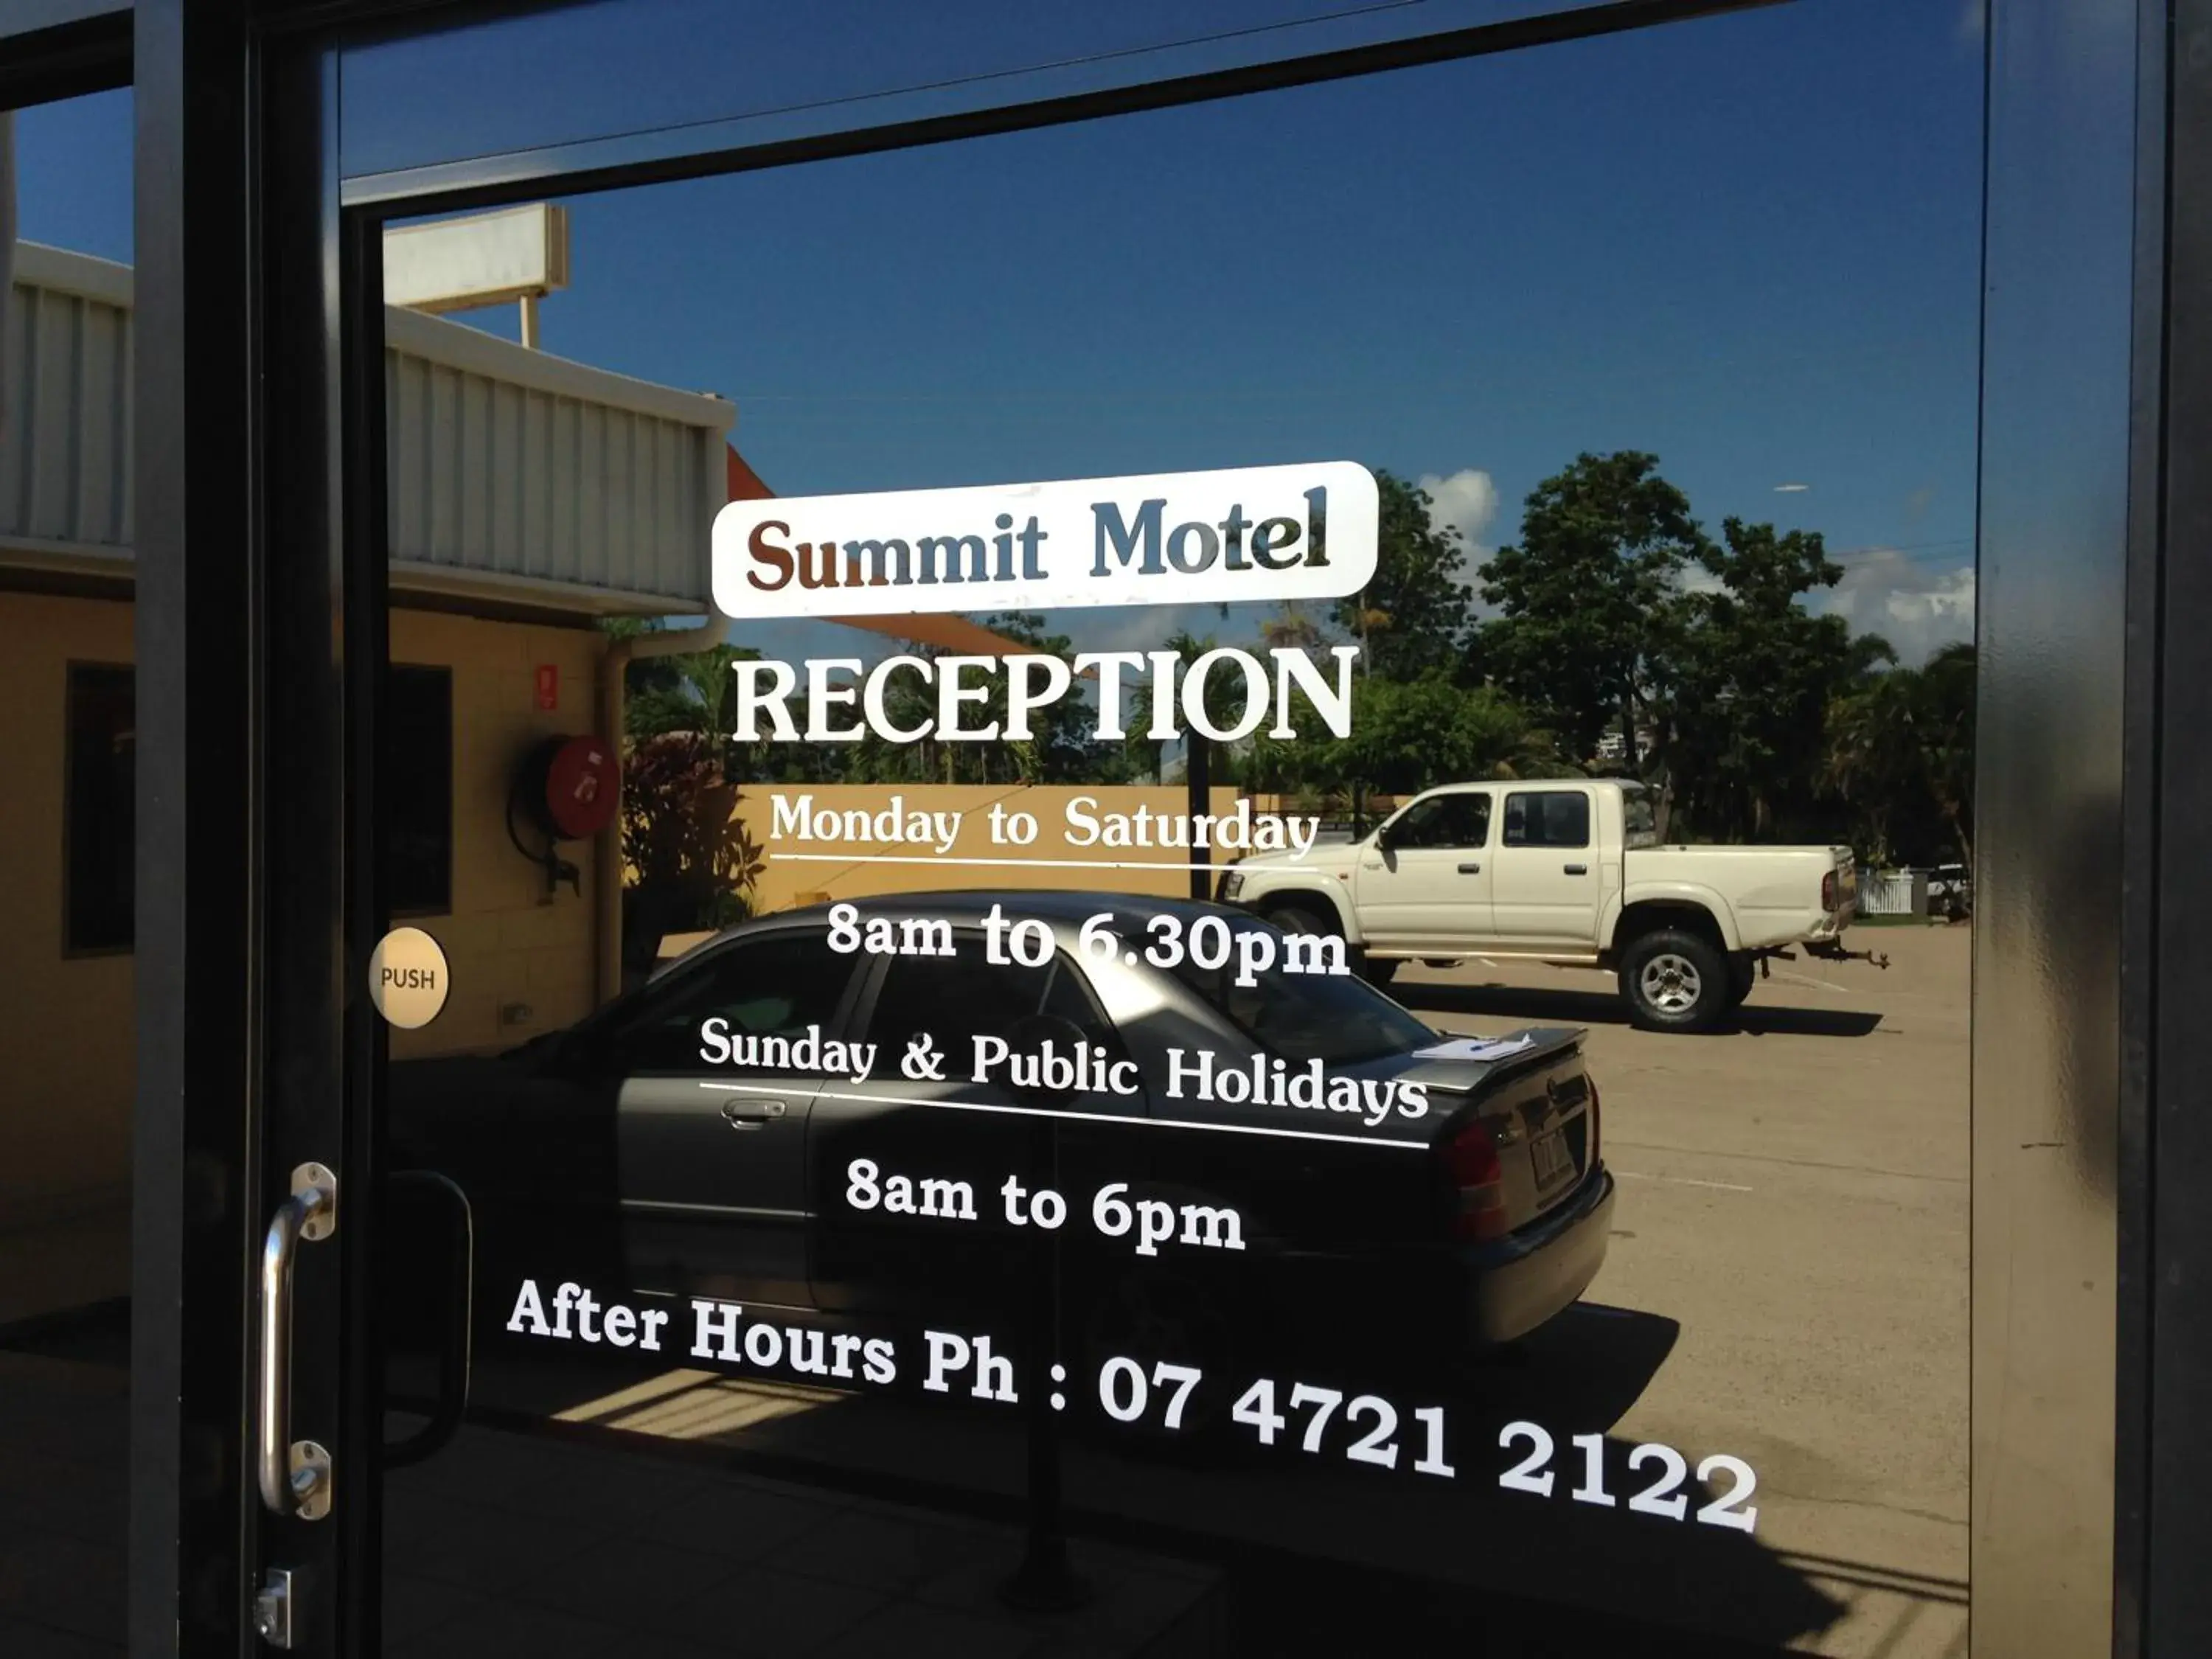 Lobby or reception in Summit Motel